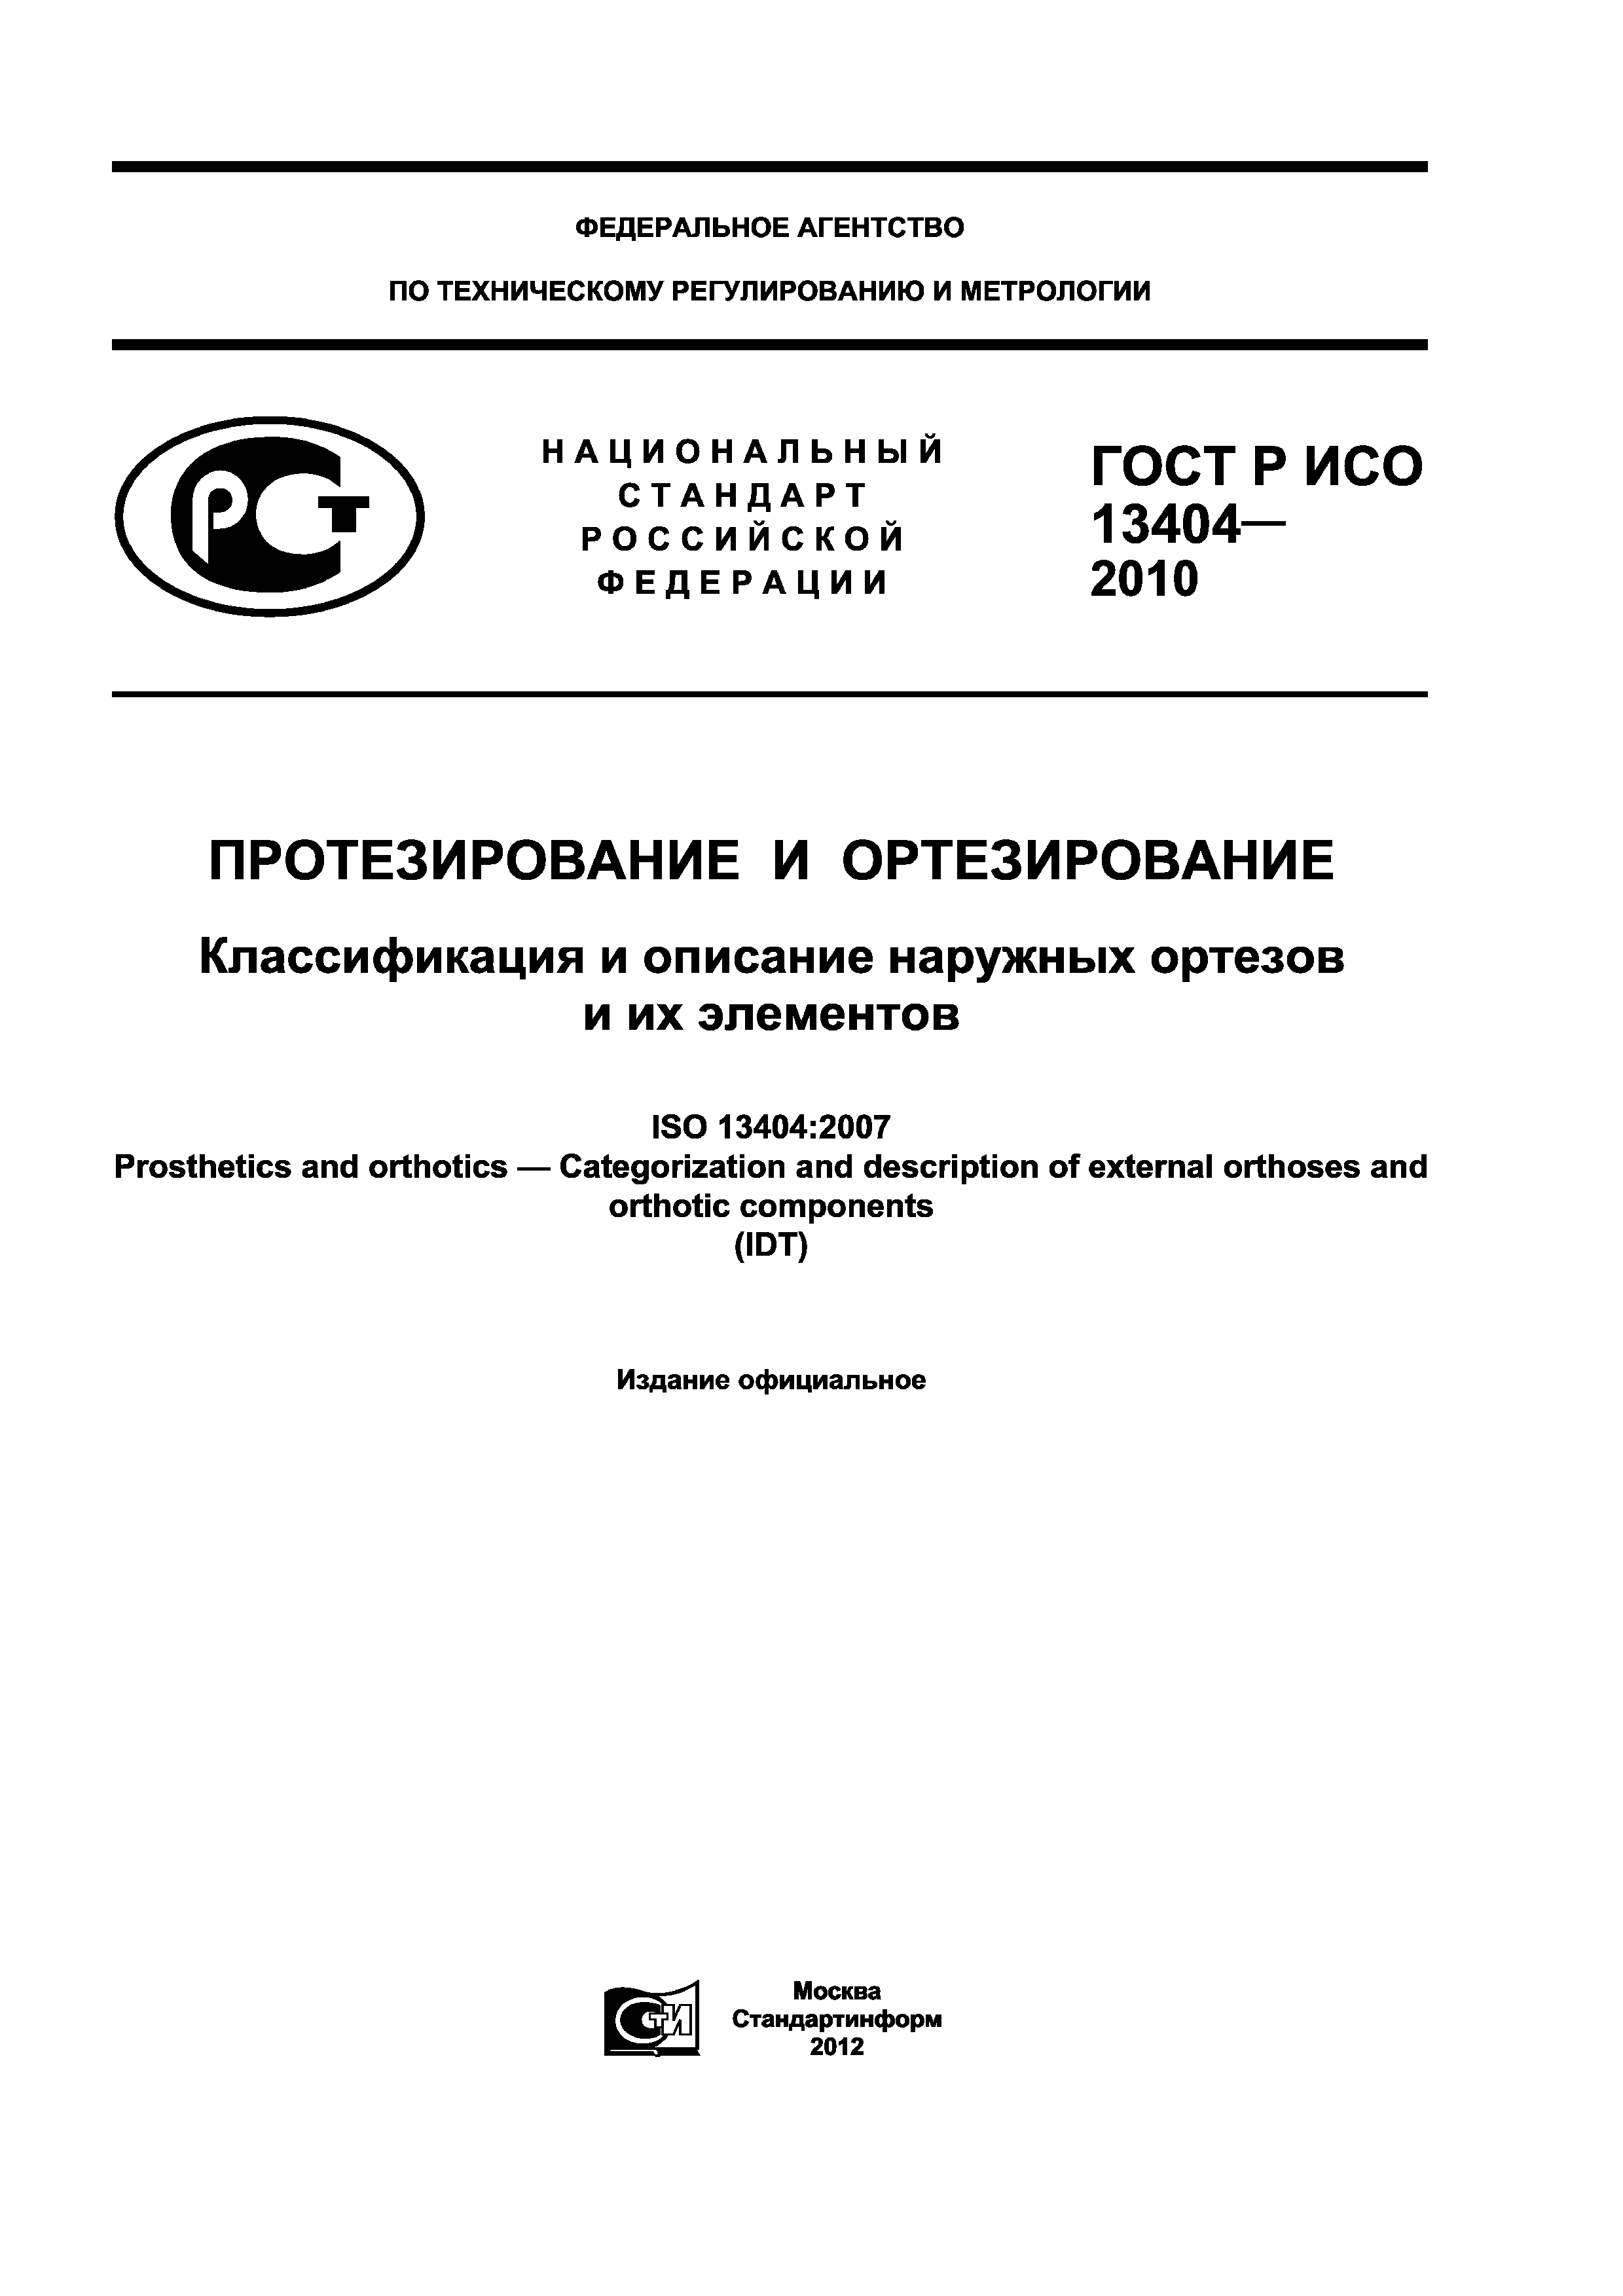 ГОСТ Р ИСО 13404-2010